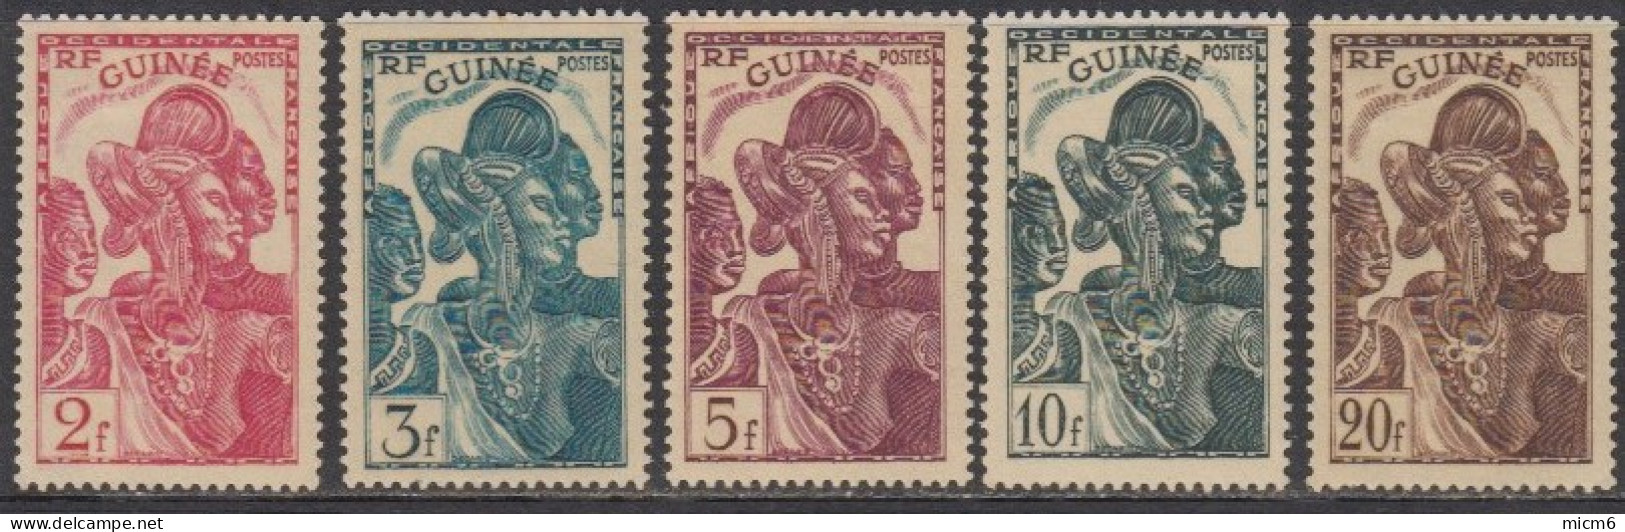 Guinée Française 1912-1944 - N° 142 à 146 (YT) N° 144 à 148 (AM) Neufs **. - Unused Stamps